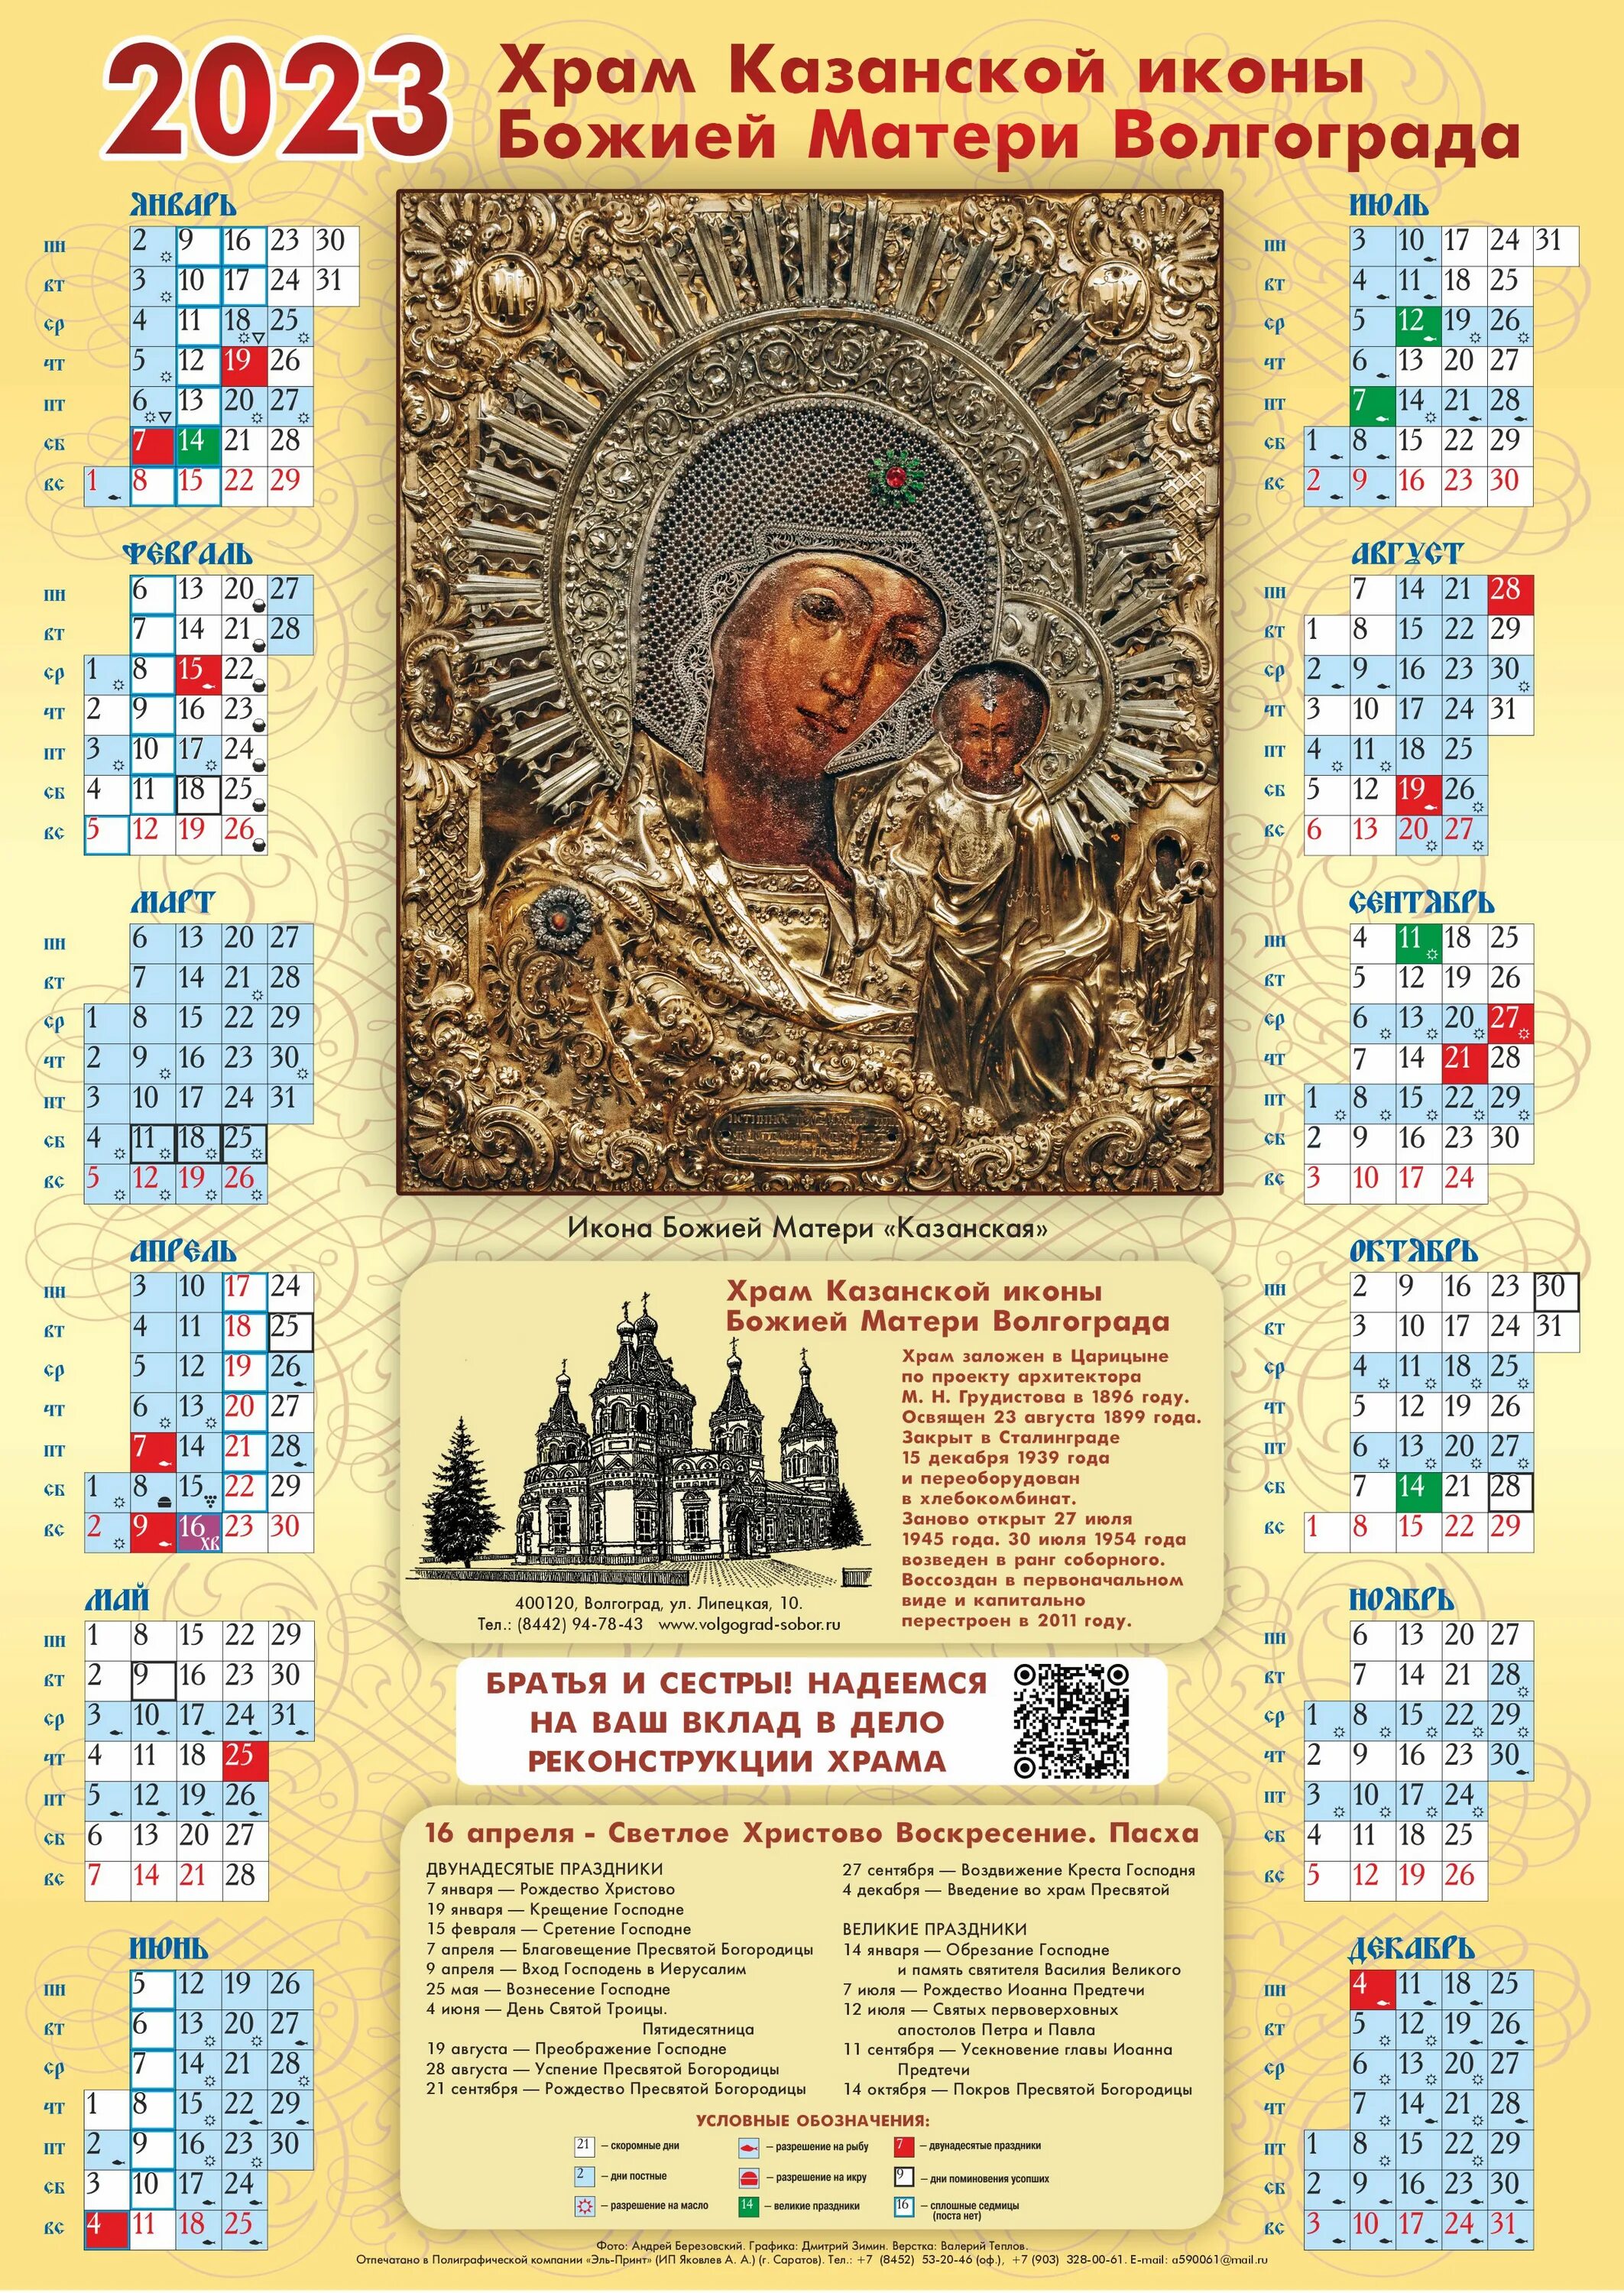 19 ноября 2023 церковный. Календарь на год. Православный календарь на 2023 год с праздниками. Церковный календарь 30 октября 2022. Церковный календарь на ноябрь 2022.